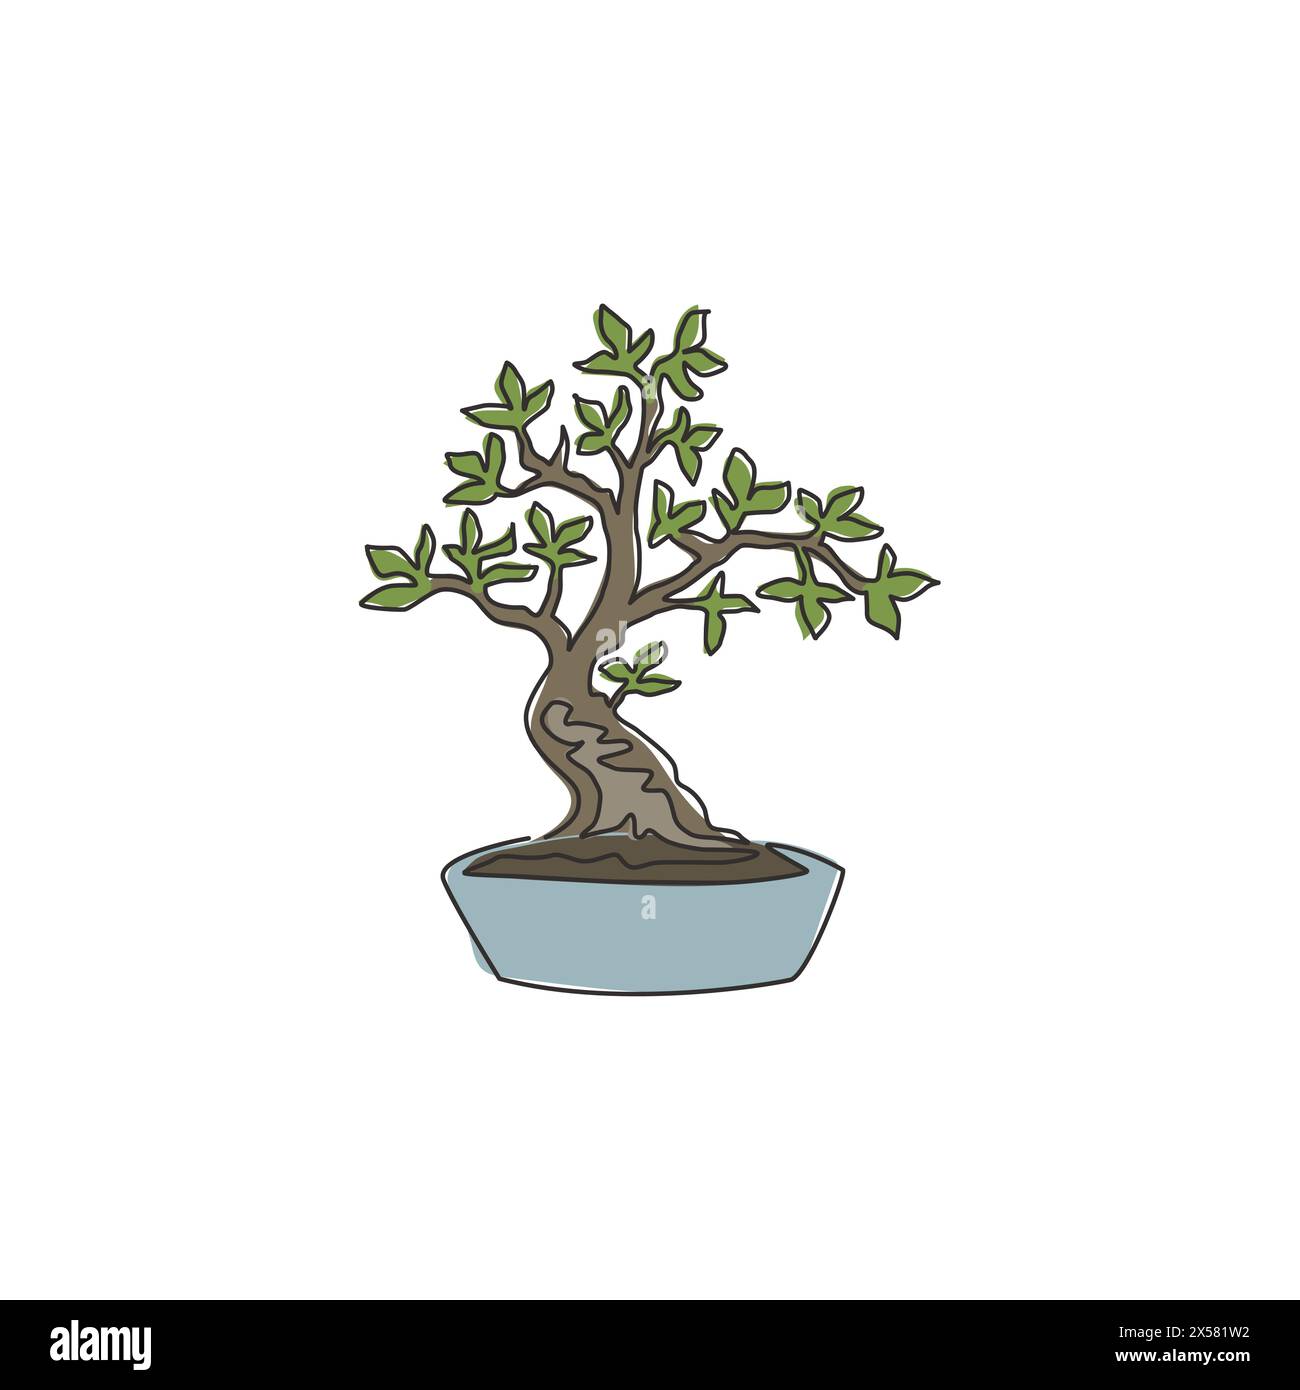 Eine durchgehende Linie mit Schönheit und exotischem Bonsai-Baum für Wohnwand-Dekor-Poster. Dekorative, antike Bonsaipflanze für den Pflanzenladen Stock Vektor